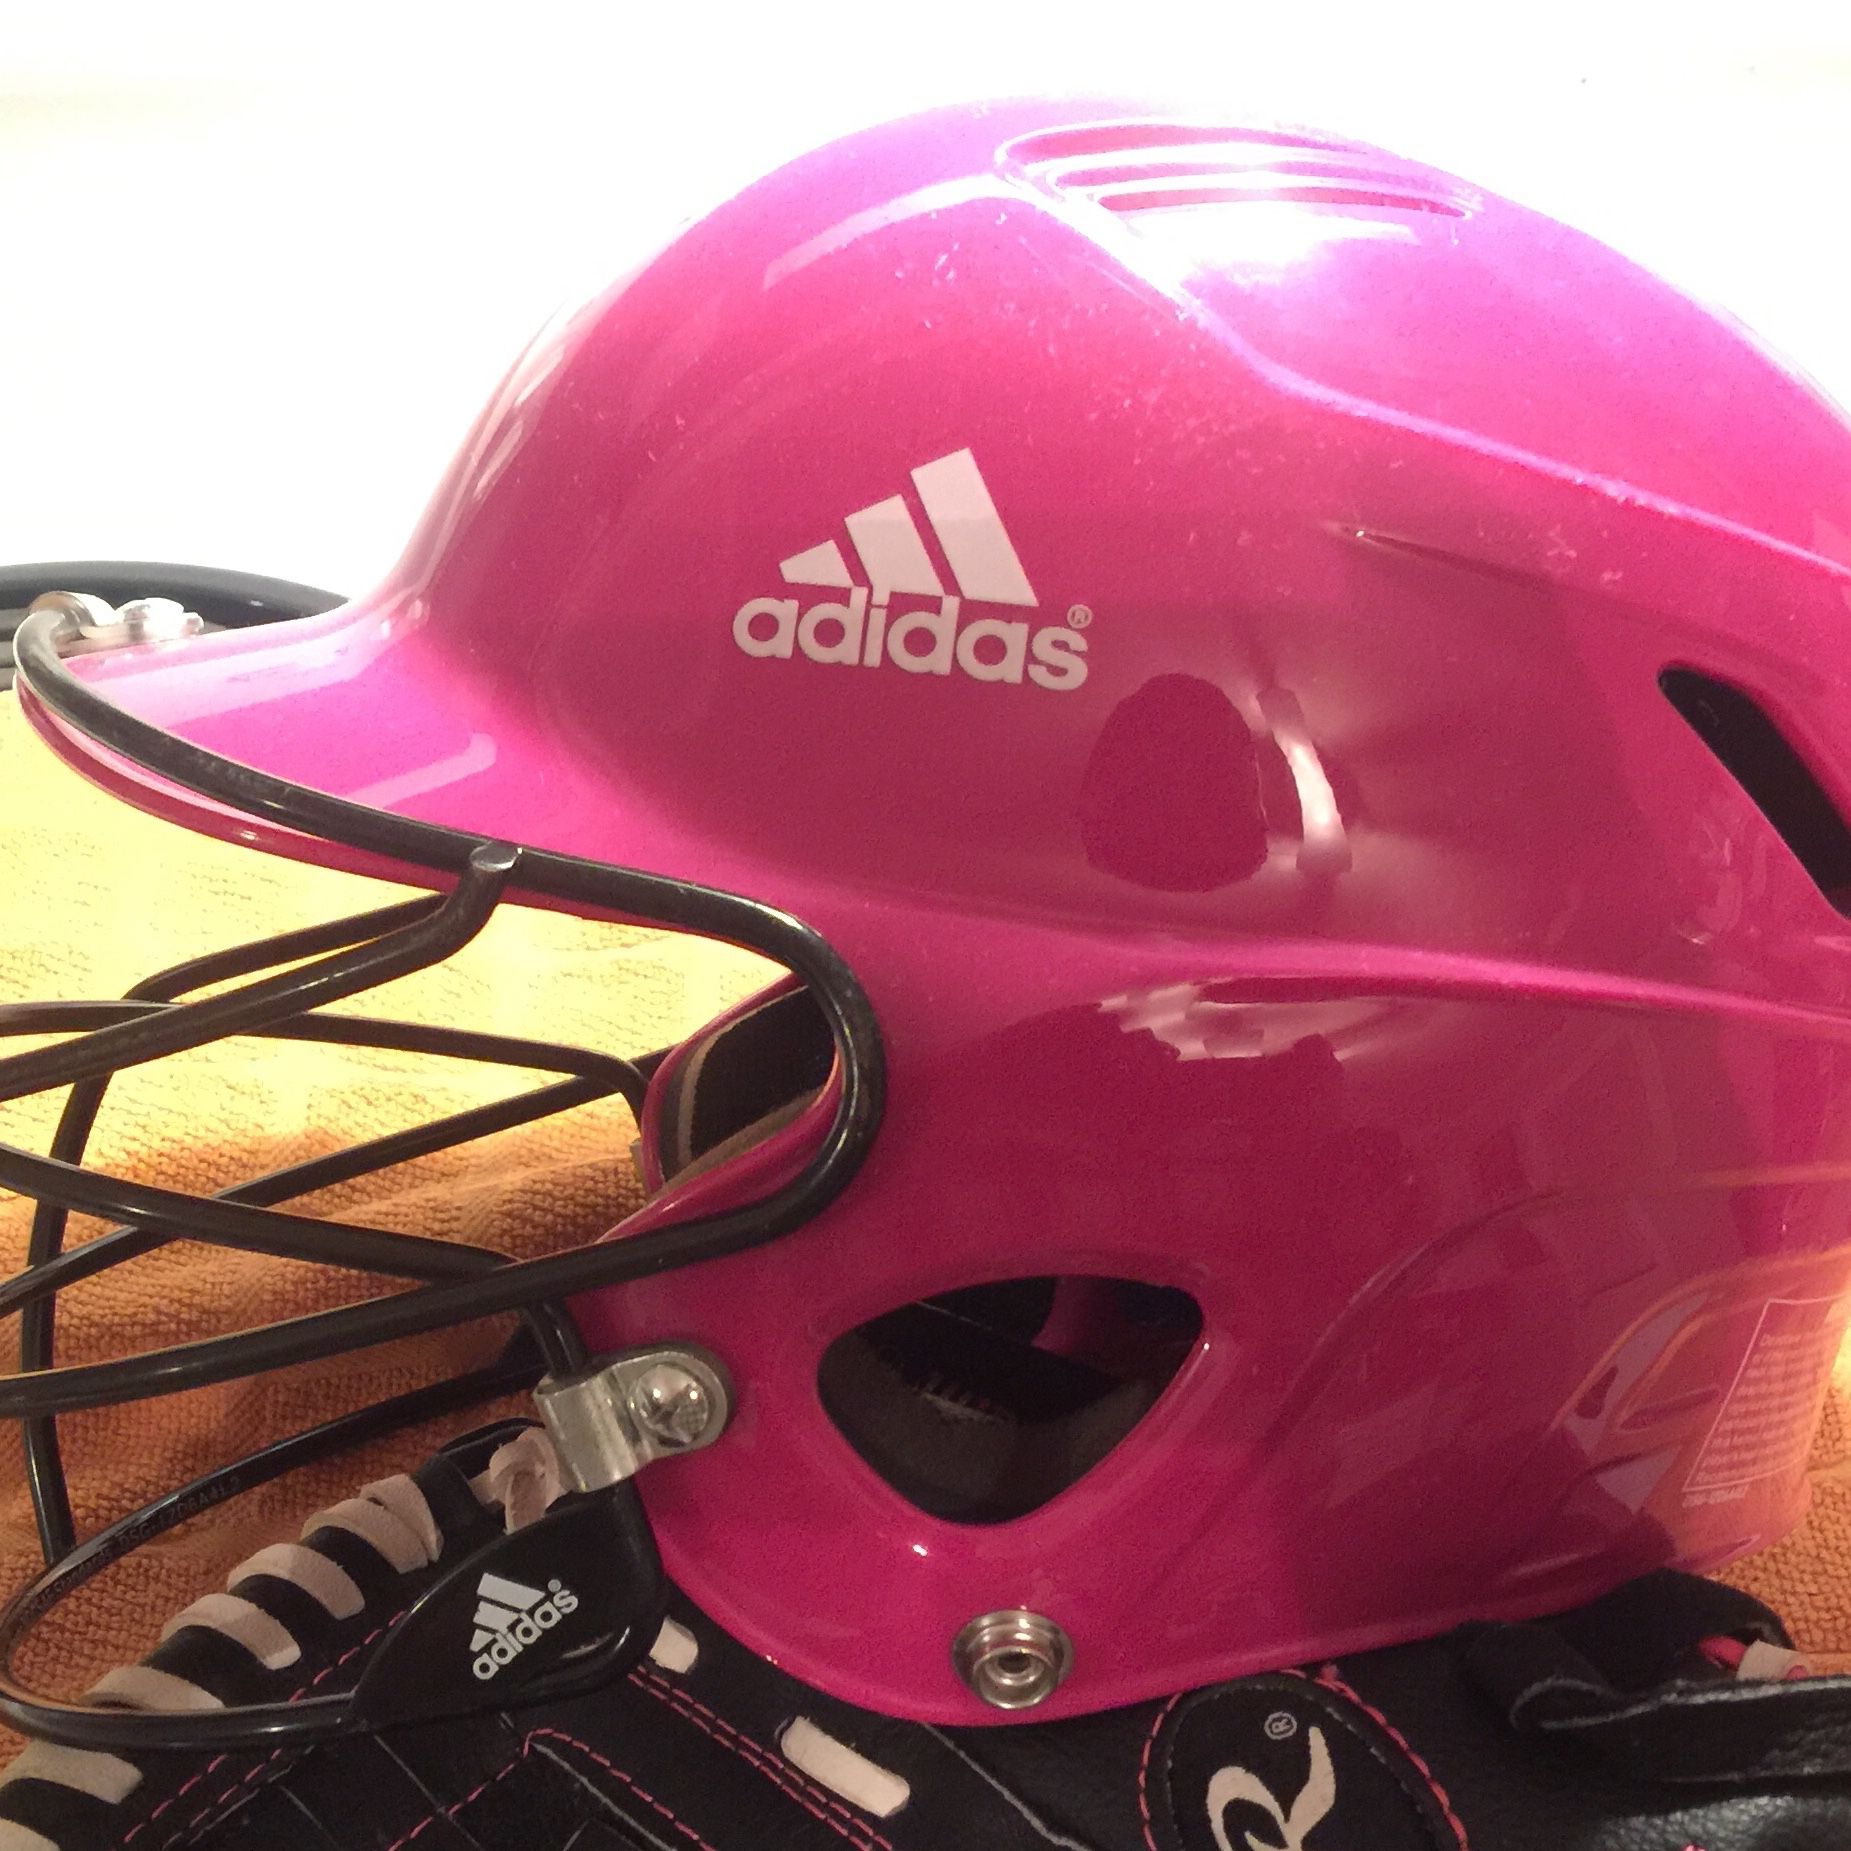 Adidas Triple Stripe Baseball Softball T-ball Helmet